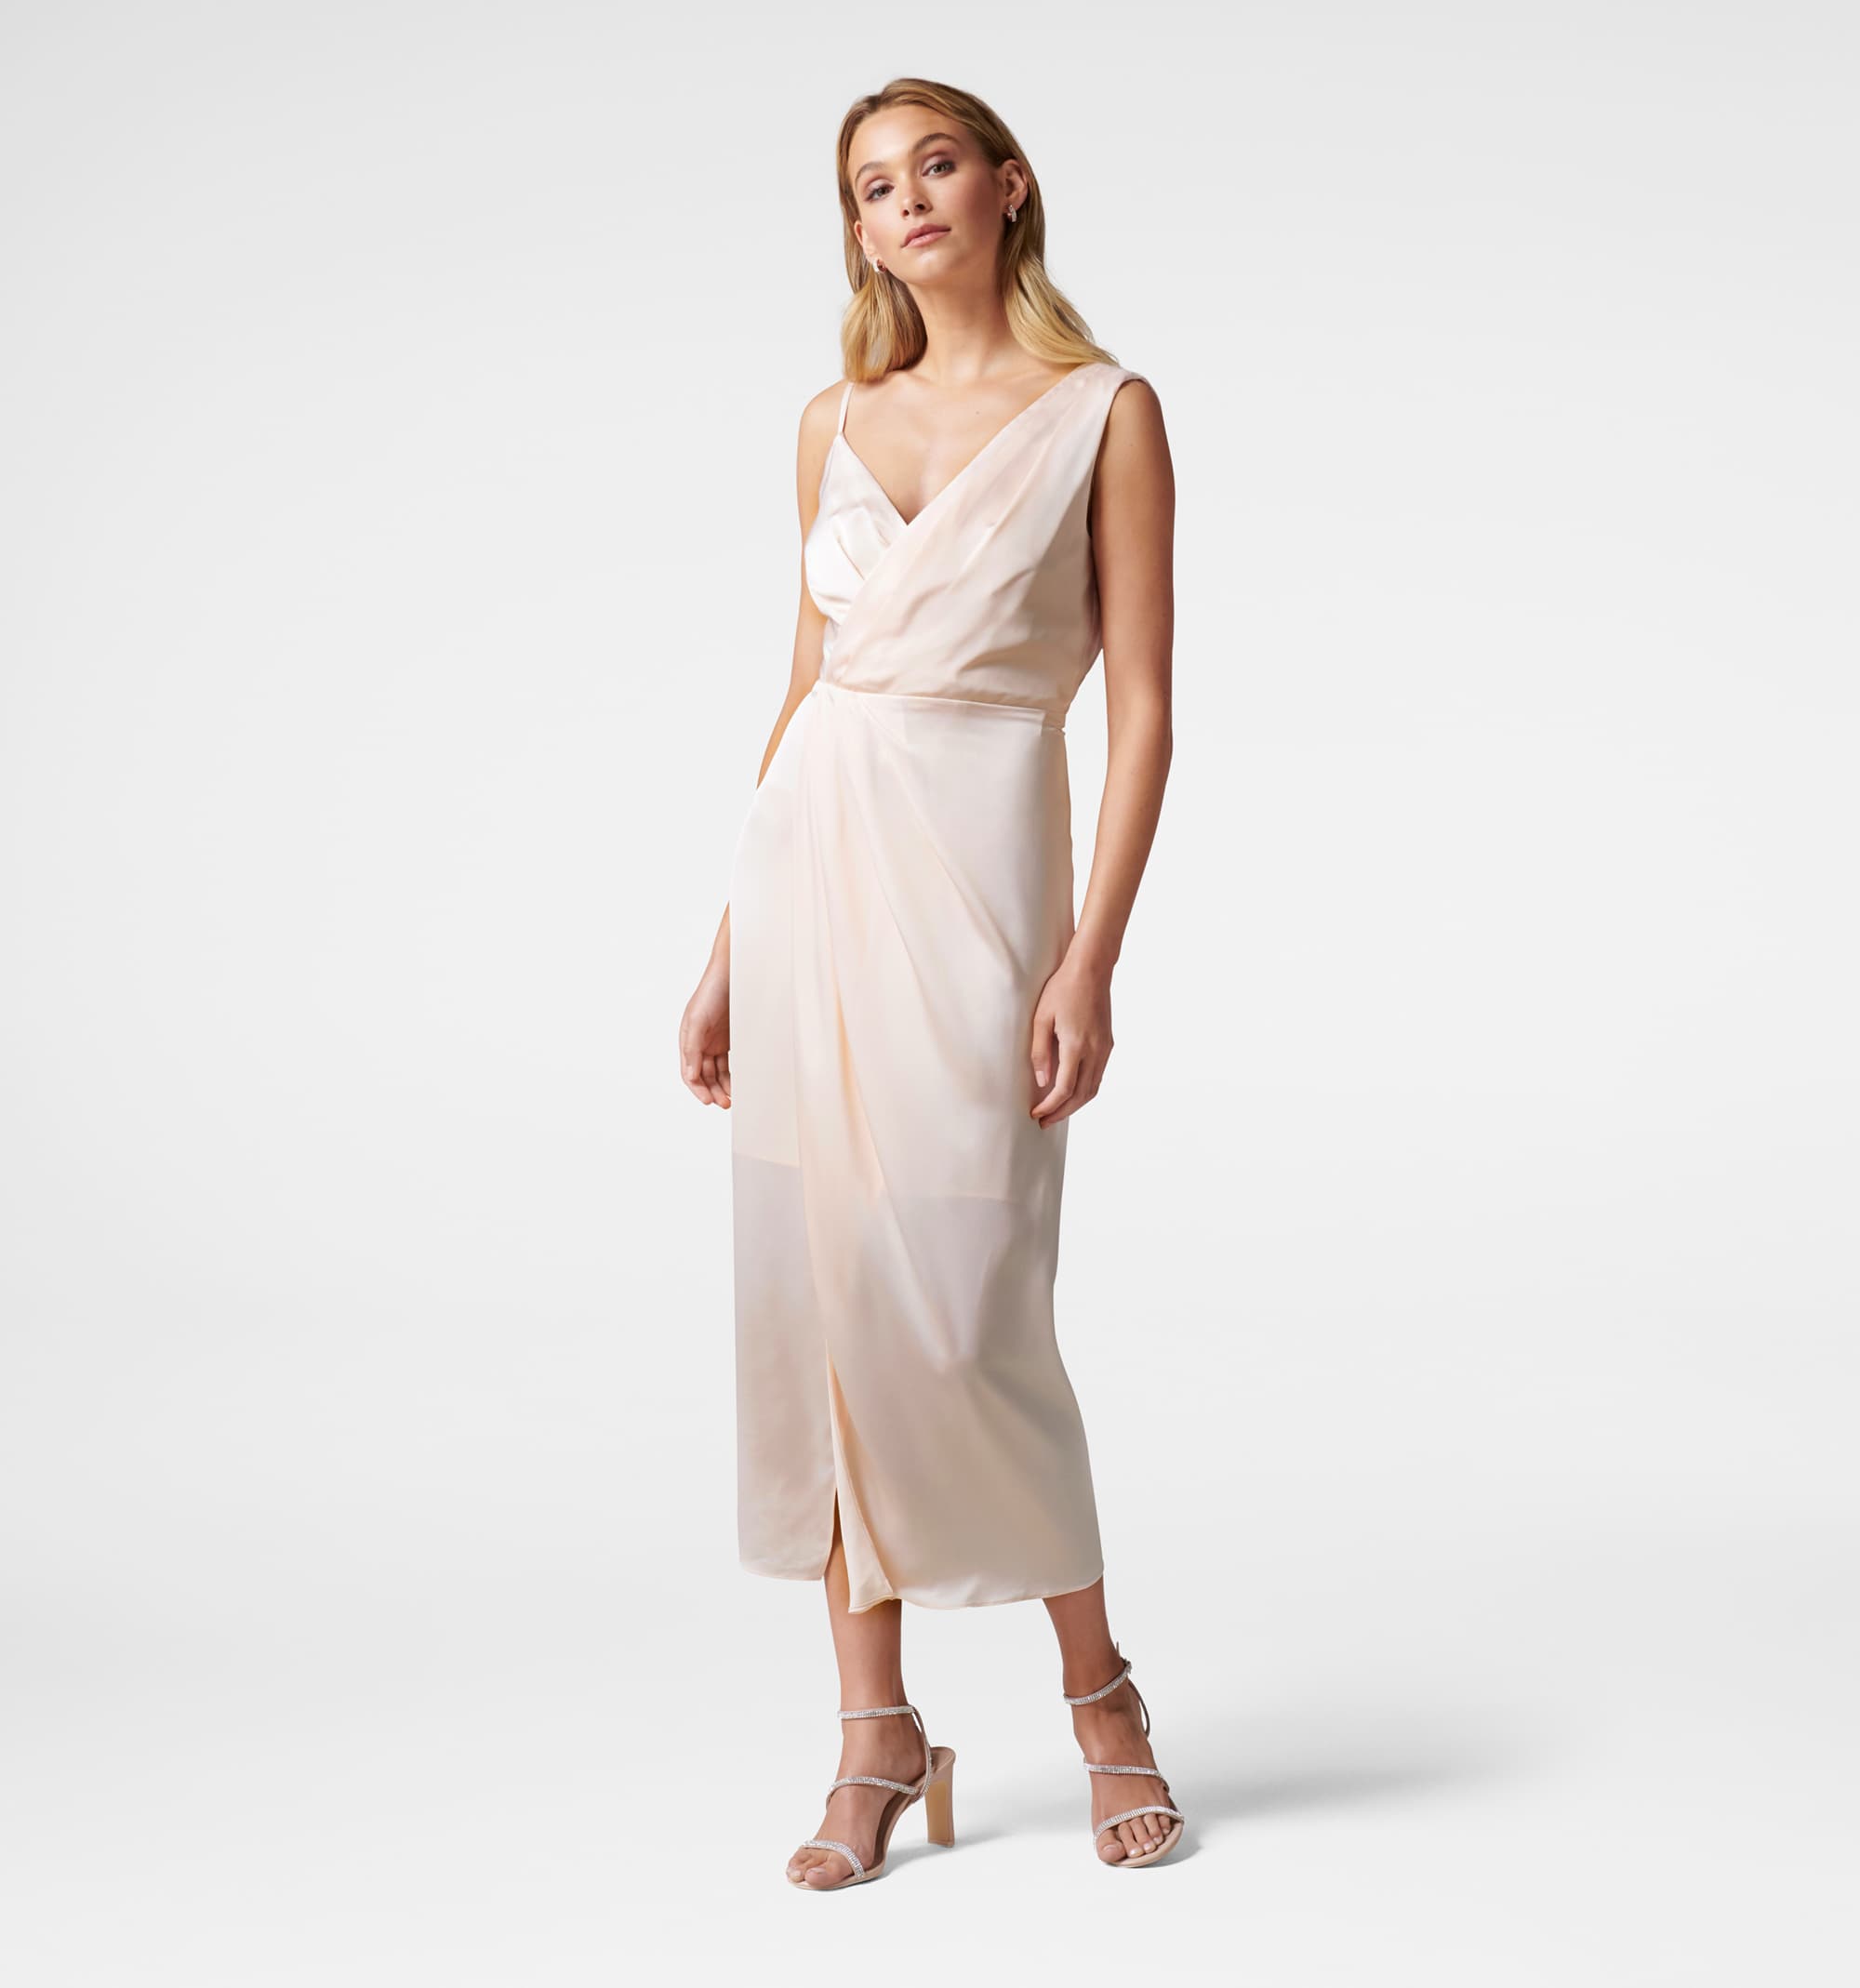 Buy Natalie Column Dress - Forever New